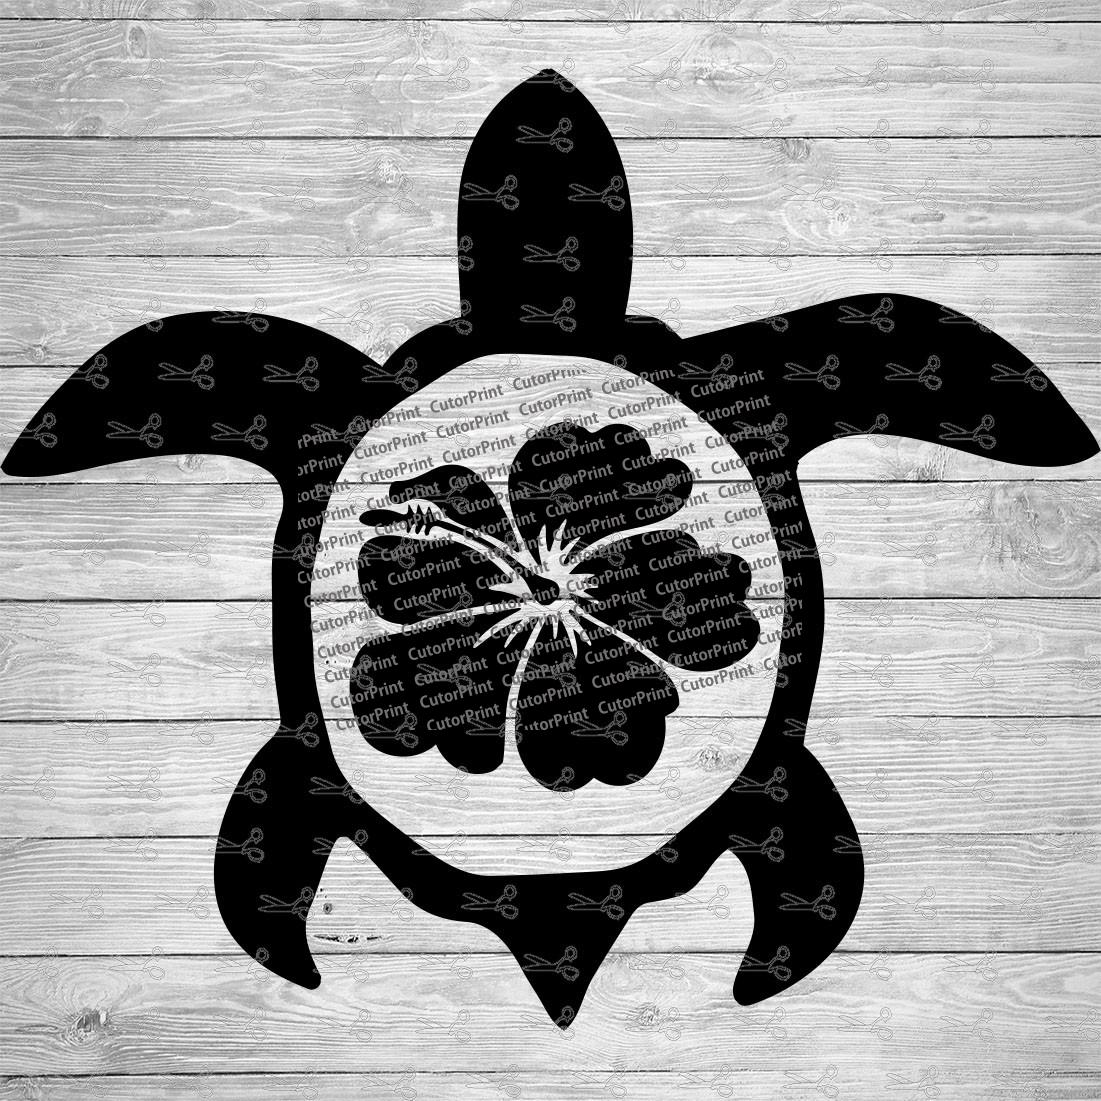 hawaiian turtle vector